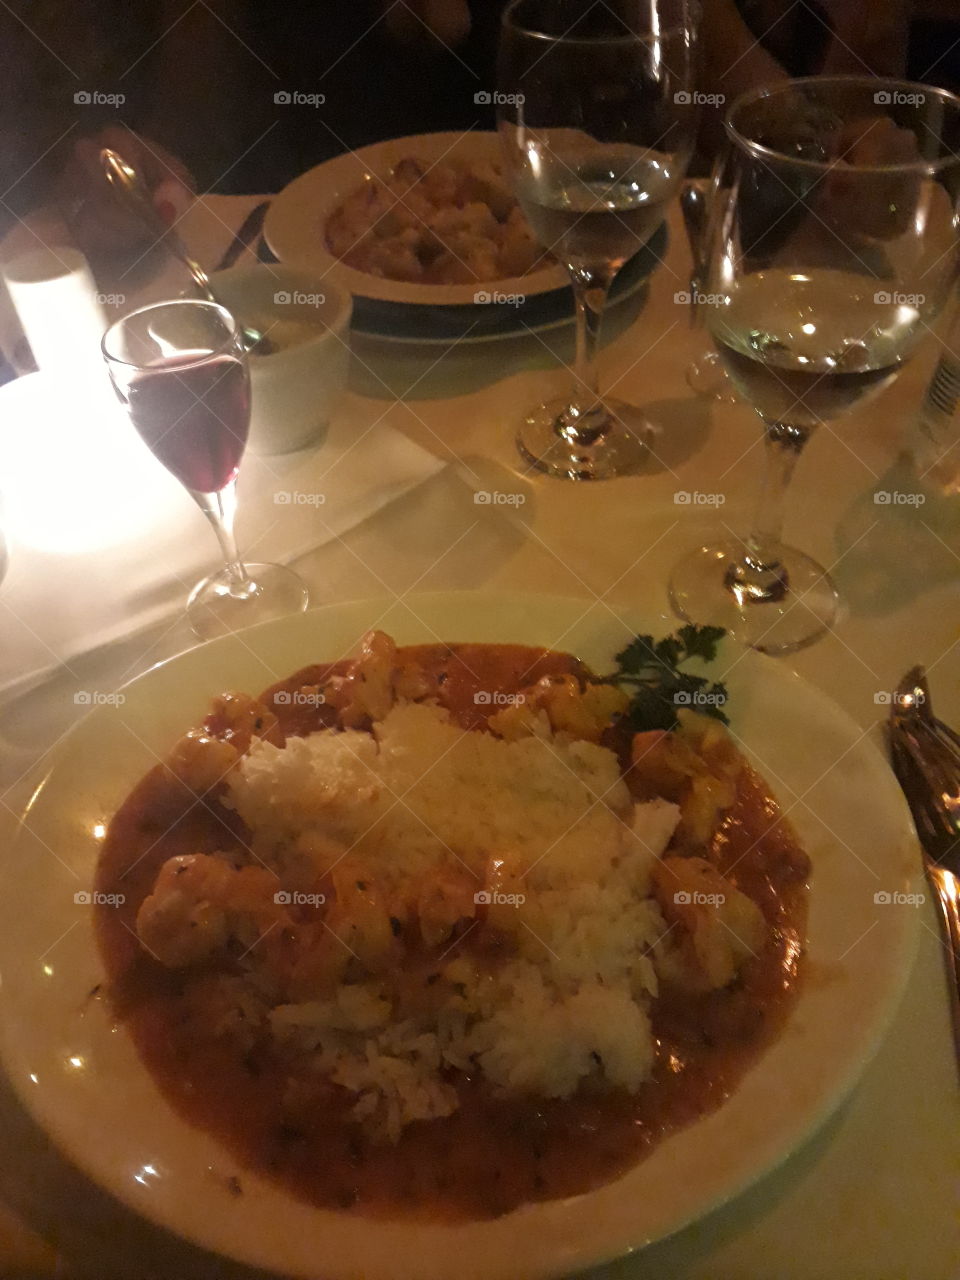 Arroz com camarão, restaurante Dona Carmela, São Paulo.  delicioso!